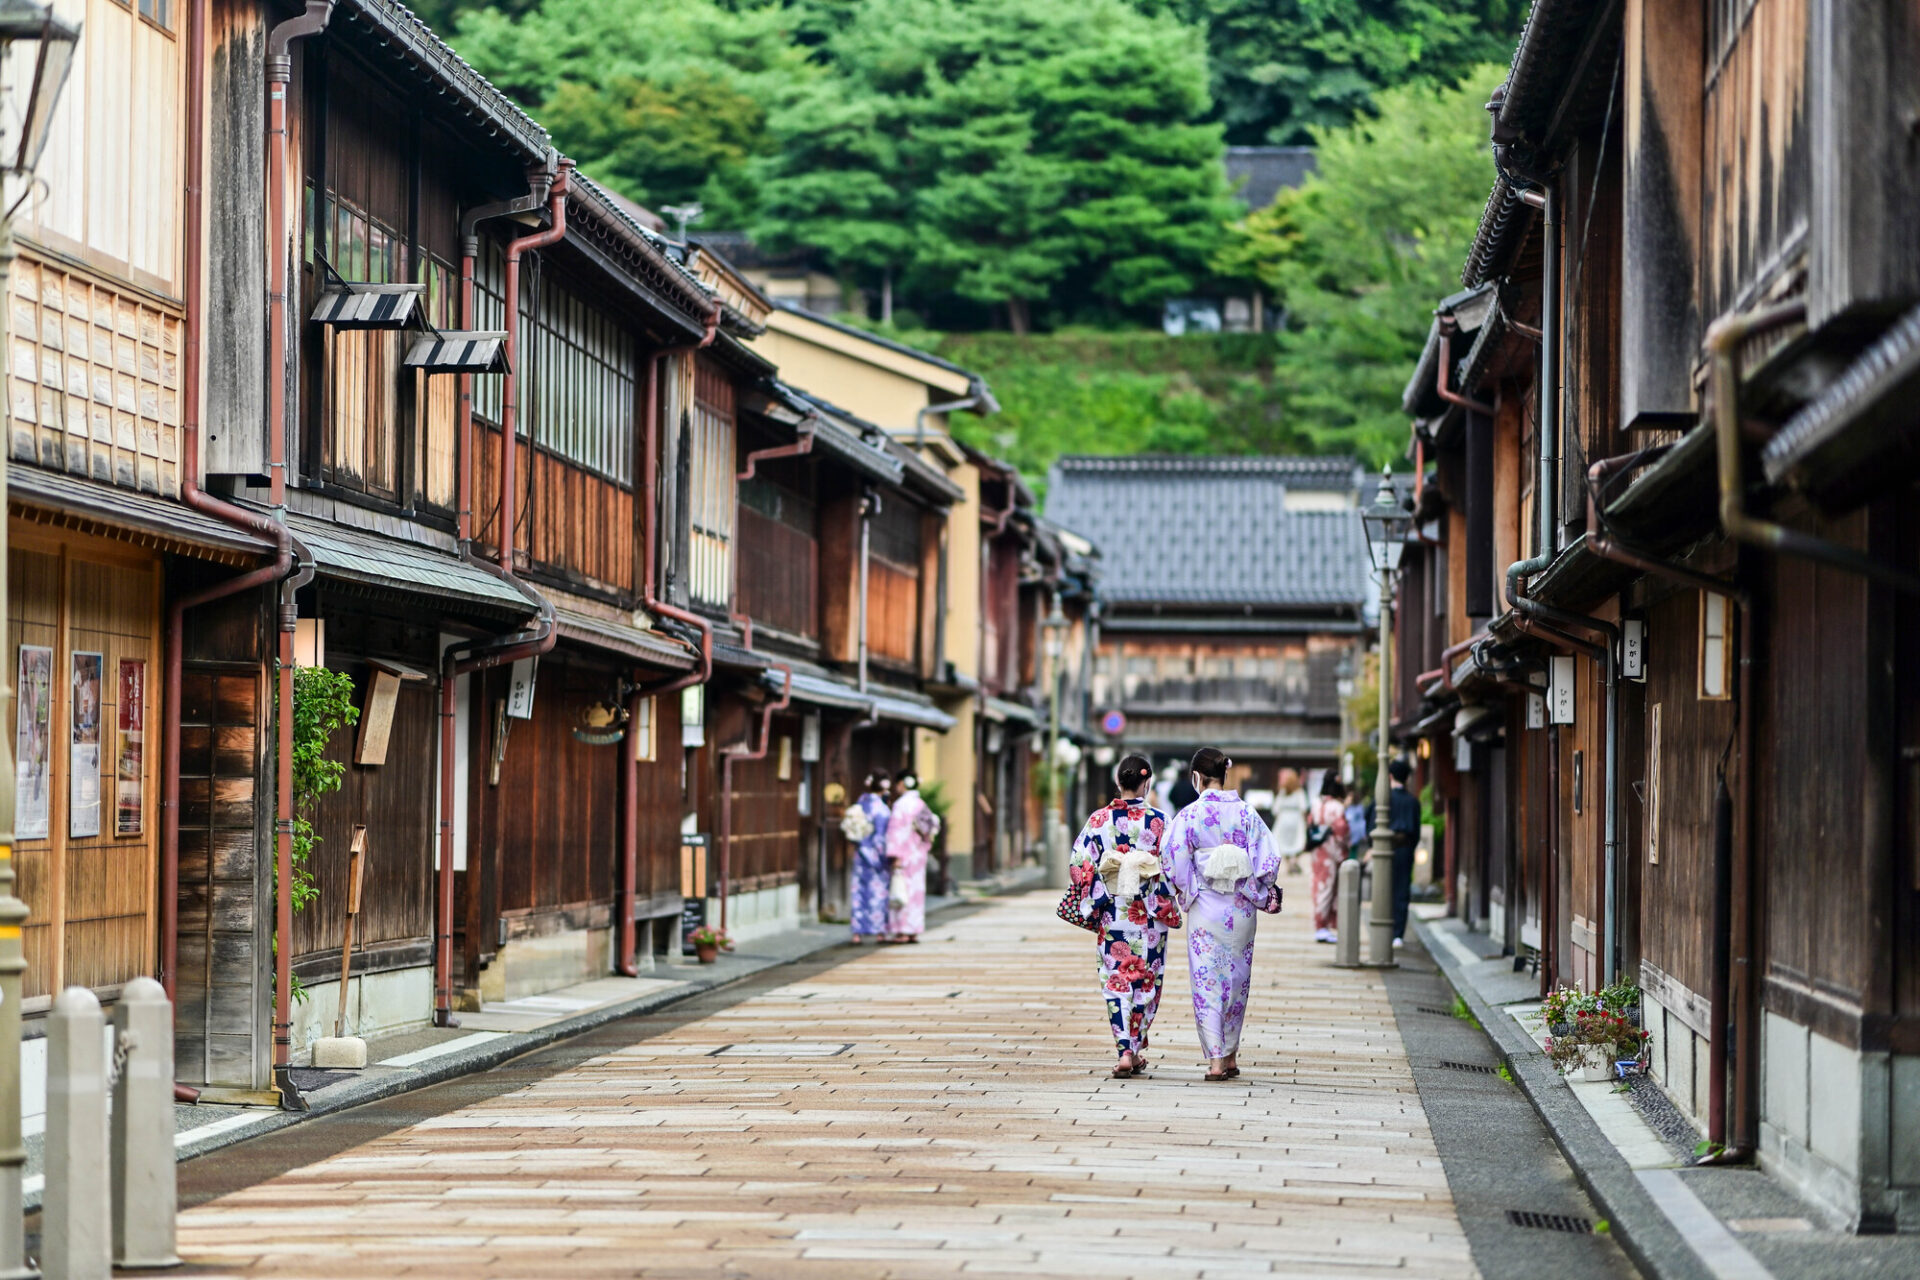 金沢観光のおすすめスポットとホテル10選 | VELTRA旅行ガイド